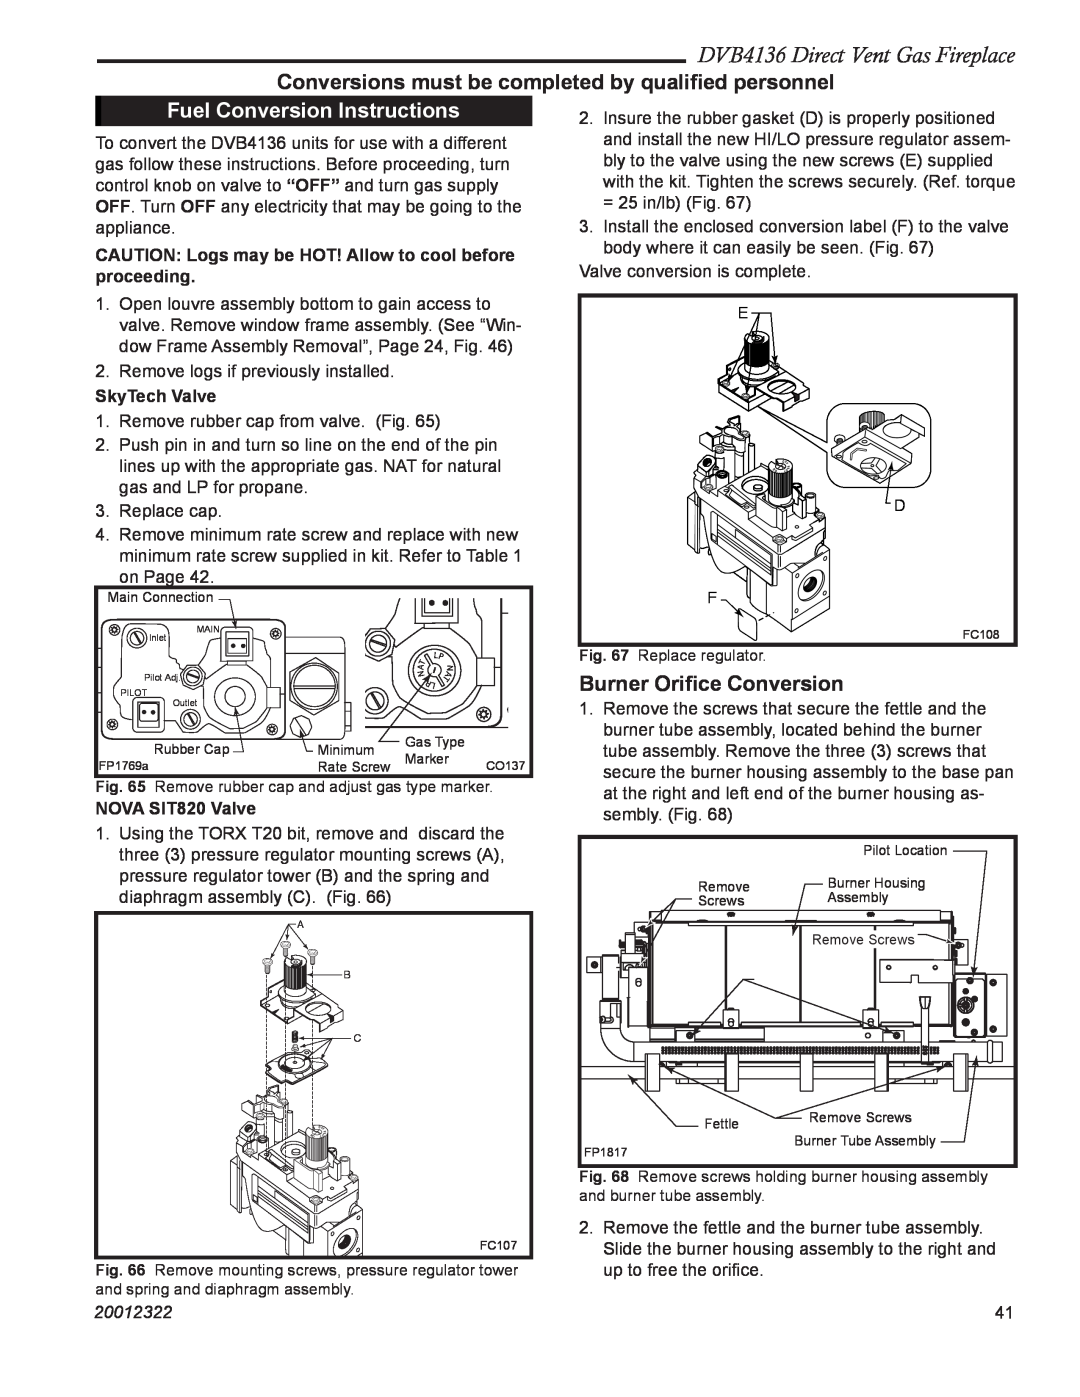 Majestic Appliances Fuel Conversion Instructions, DVB4136 Direct Vent Gas Fireplace, Burner Oriﬁce Conversion, 20012322 